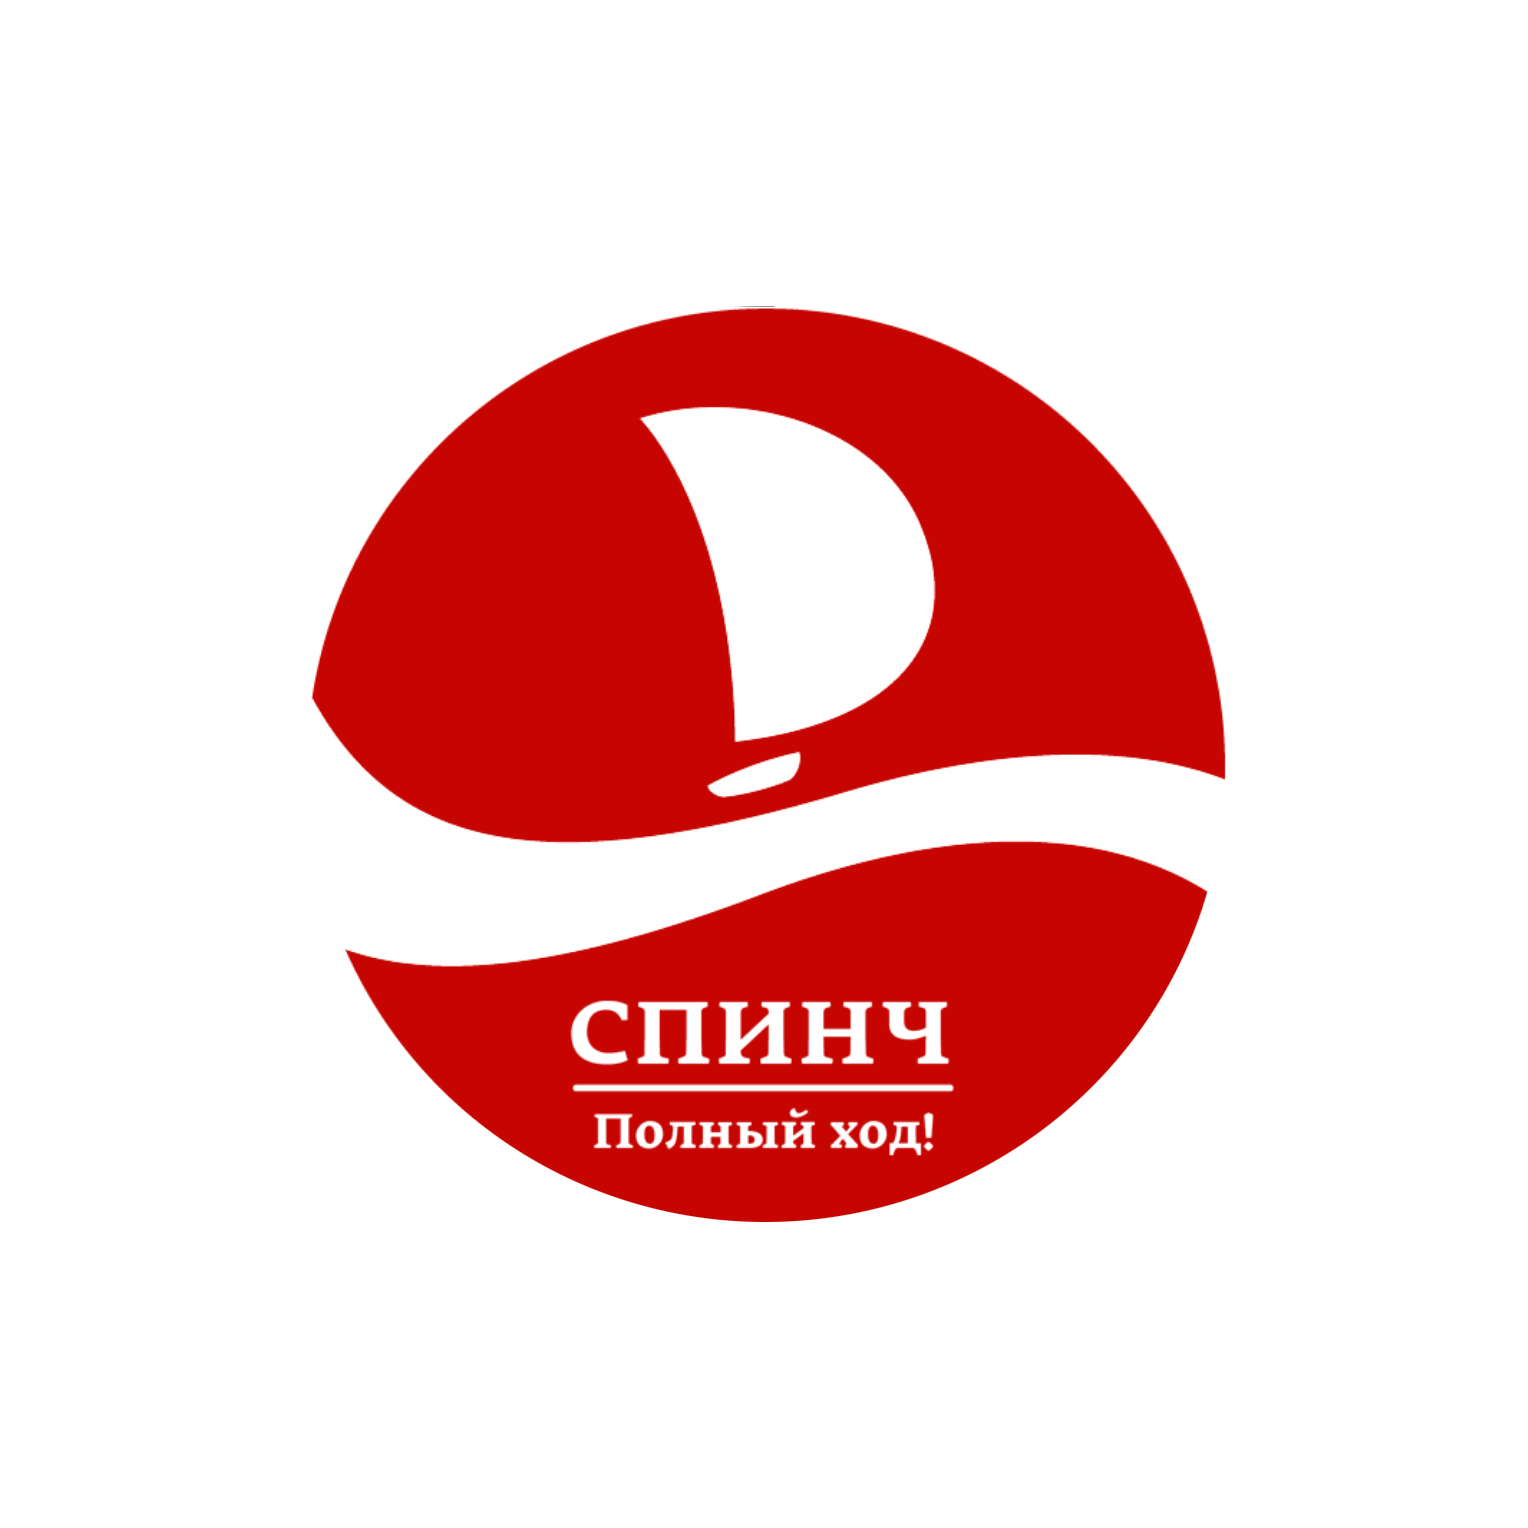 Спинч - качественные риэлторские услуги в Красноярске